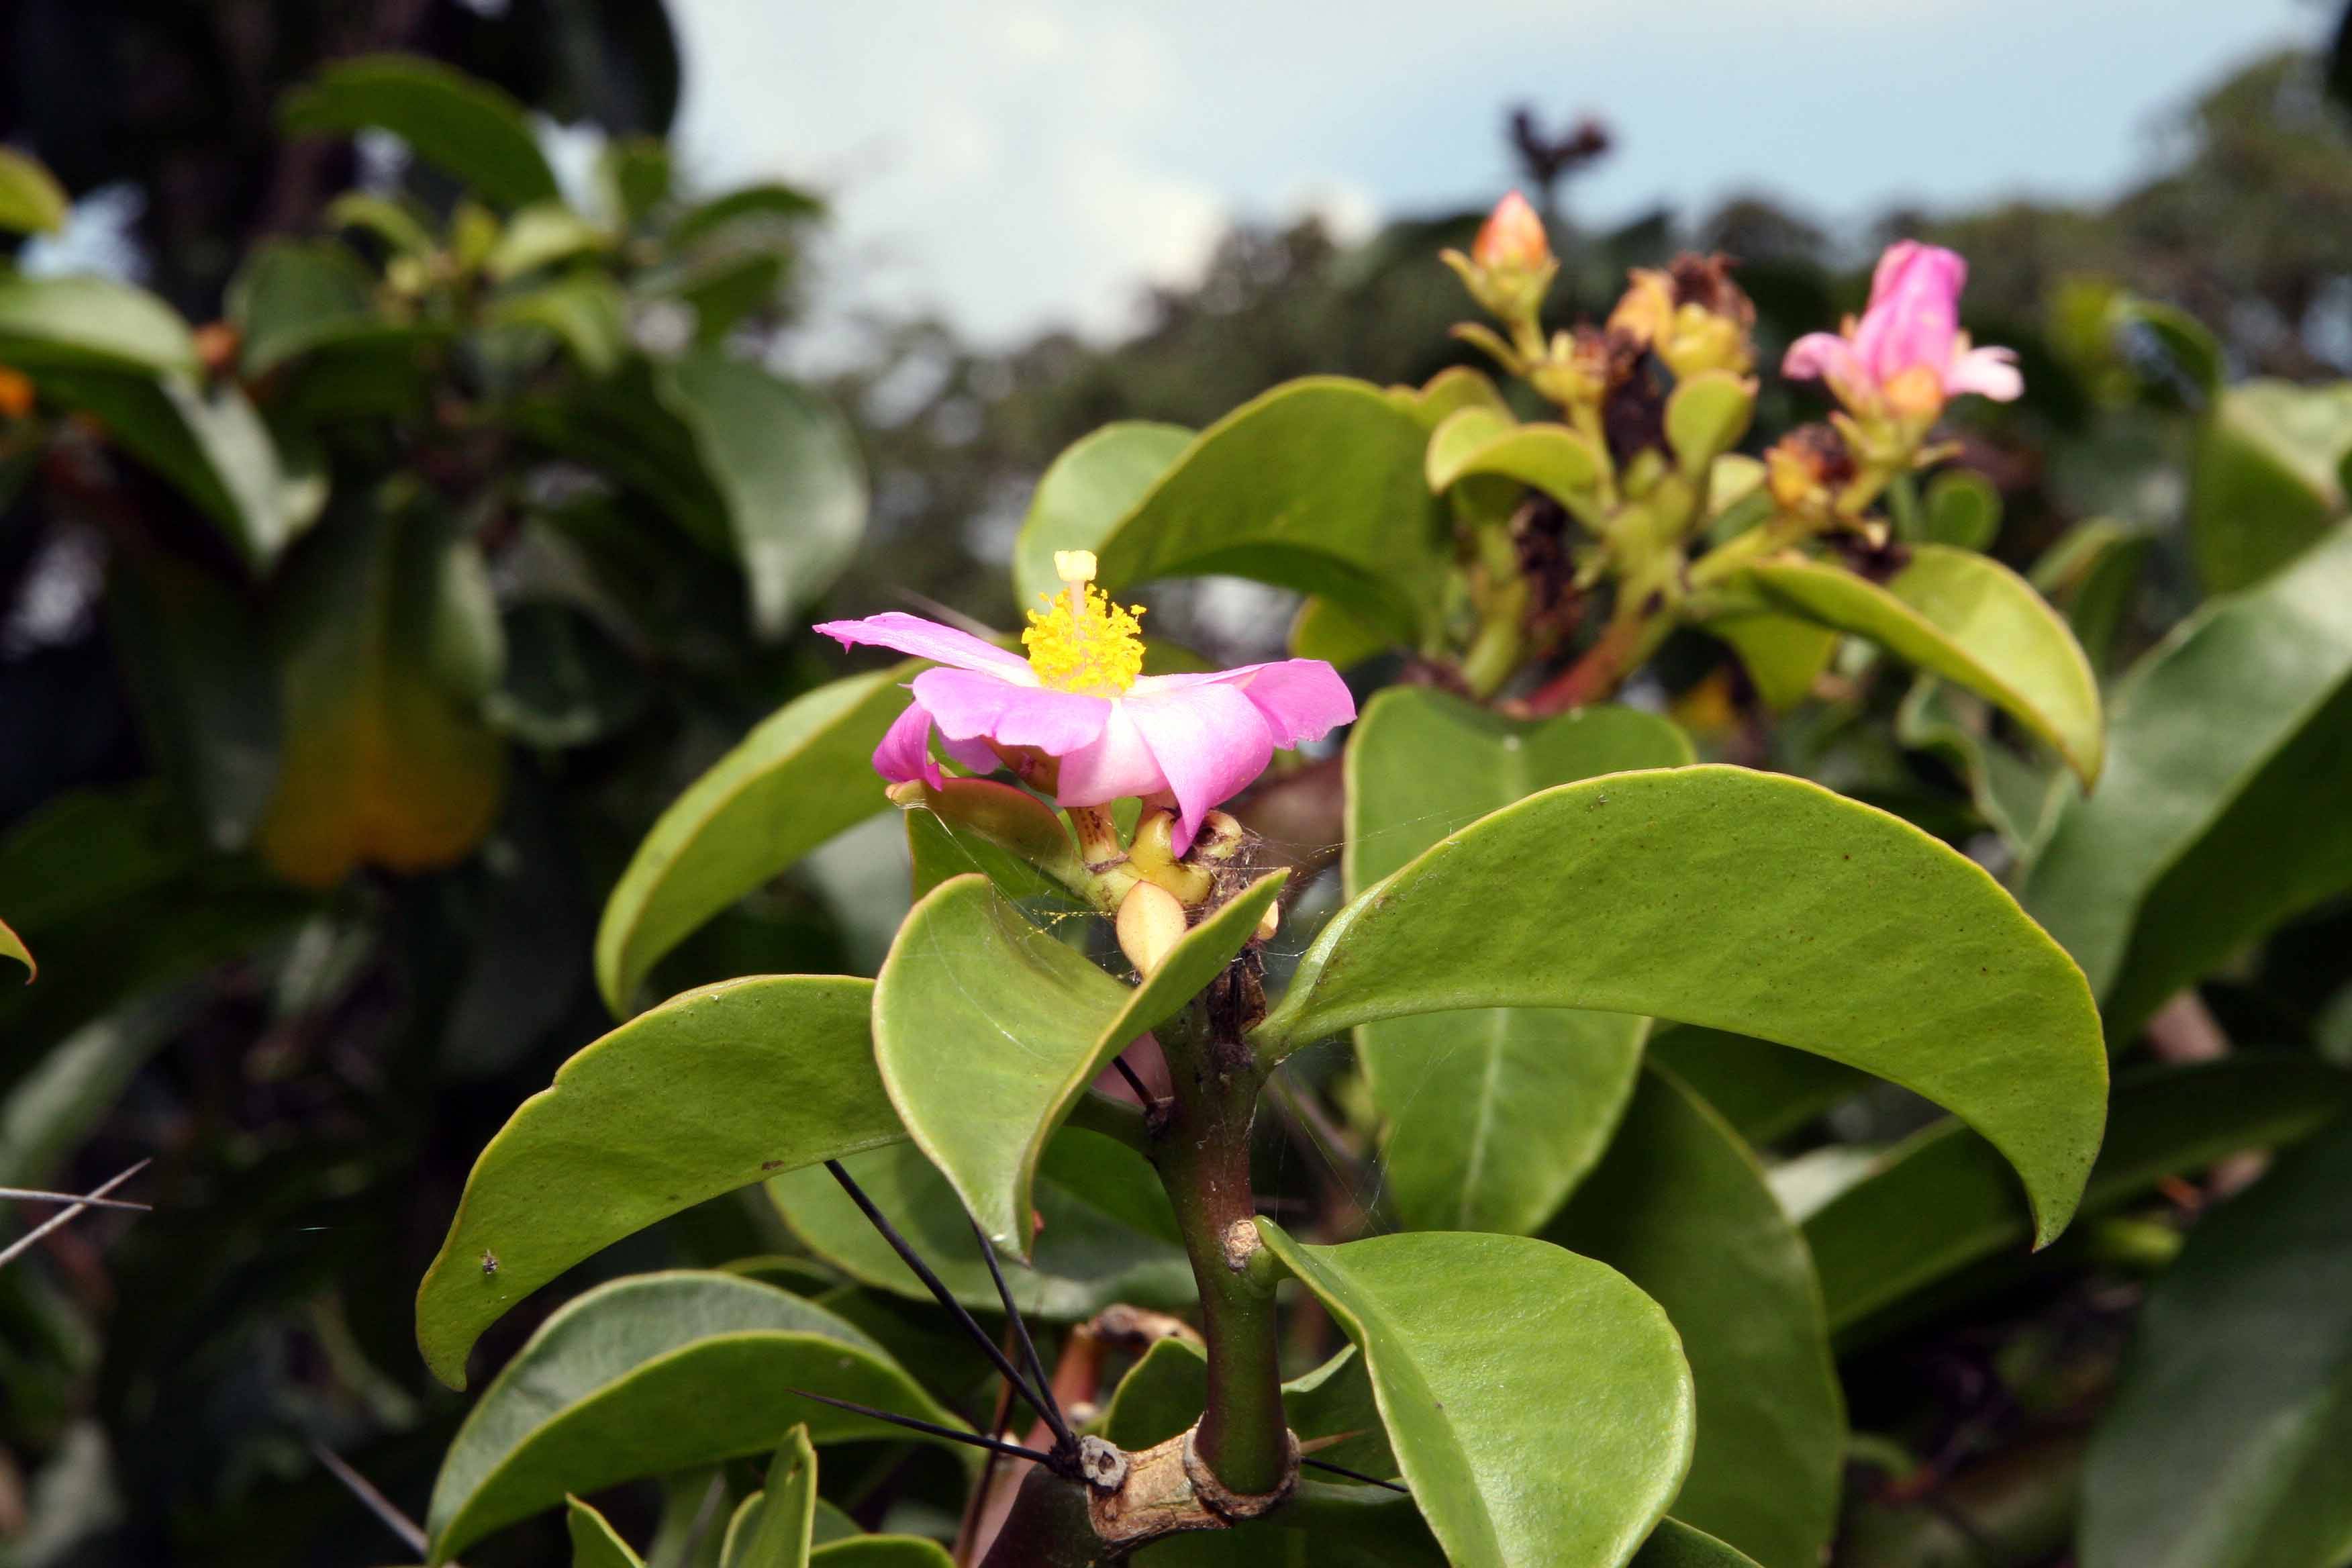 Переския — цветущий лиственный кактус